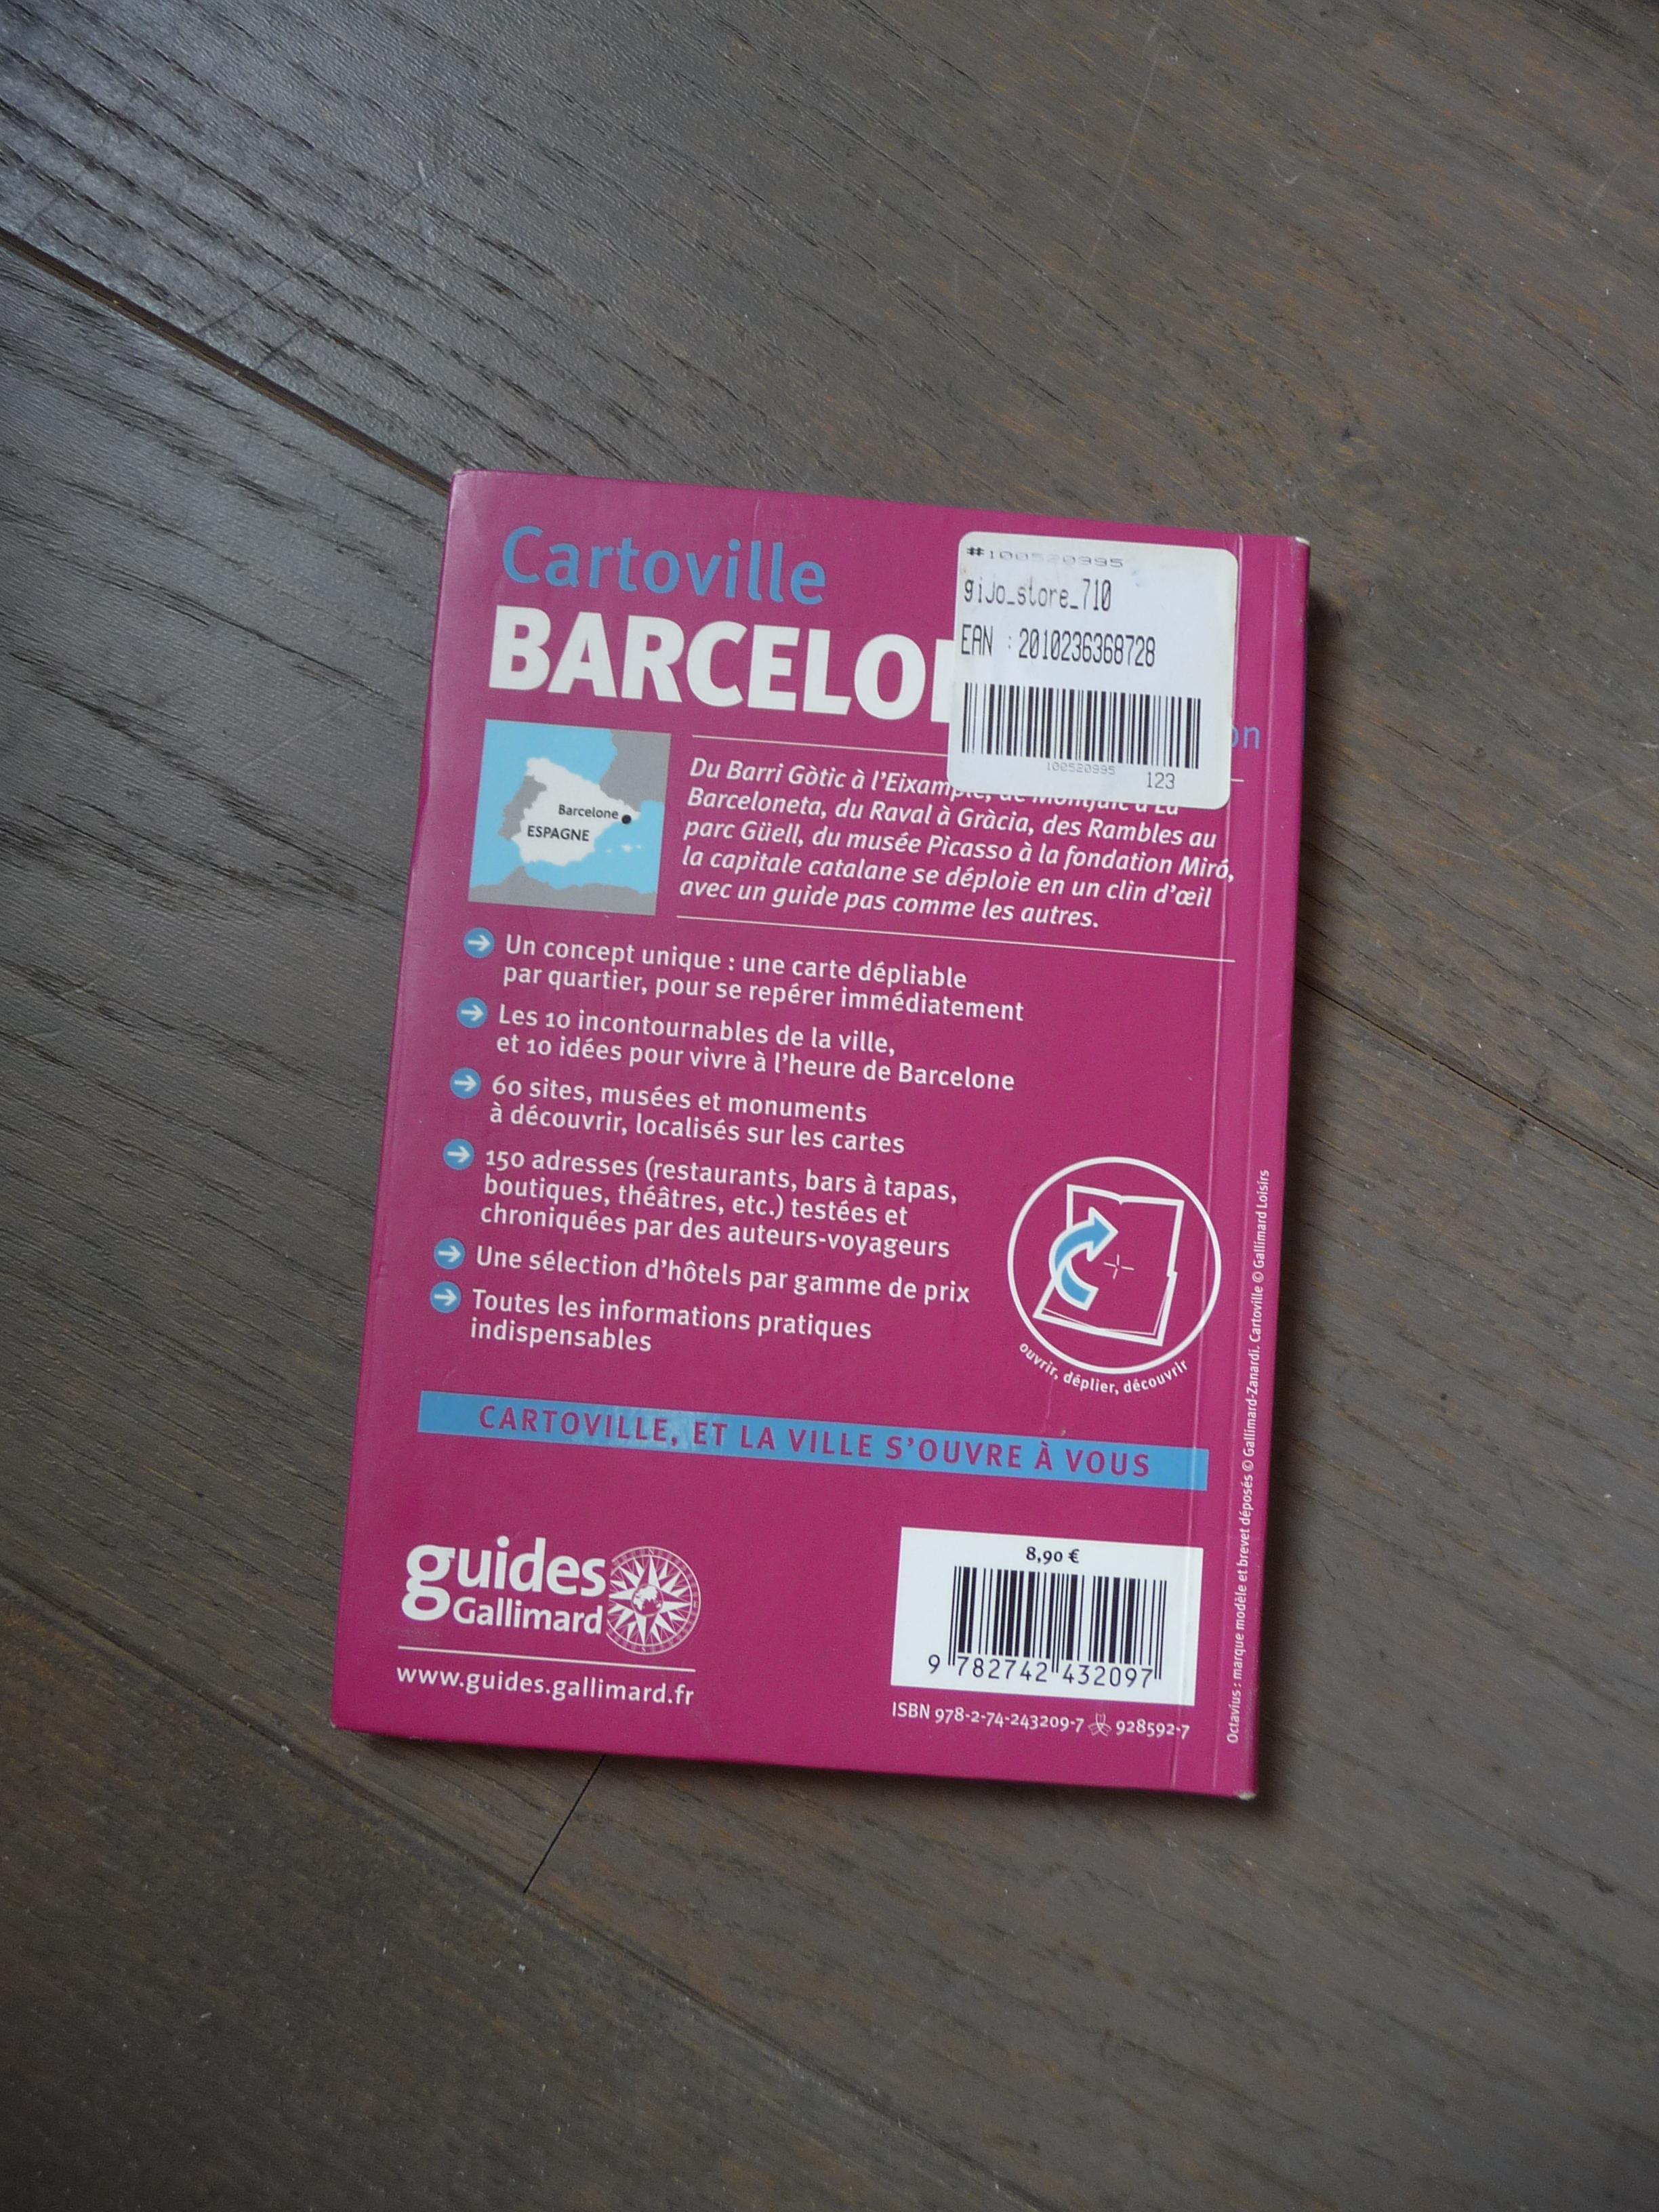 troc de troc guide de voyage "cartoville barcelone" image 2